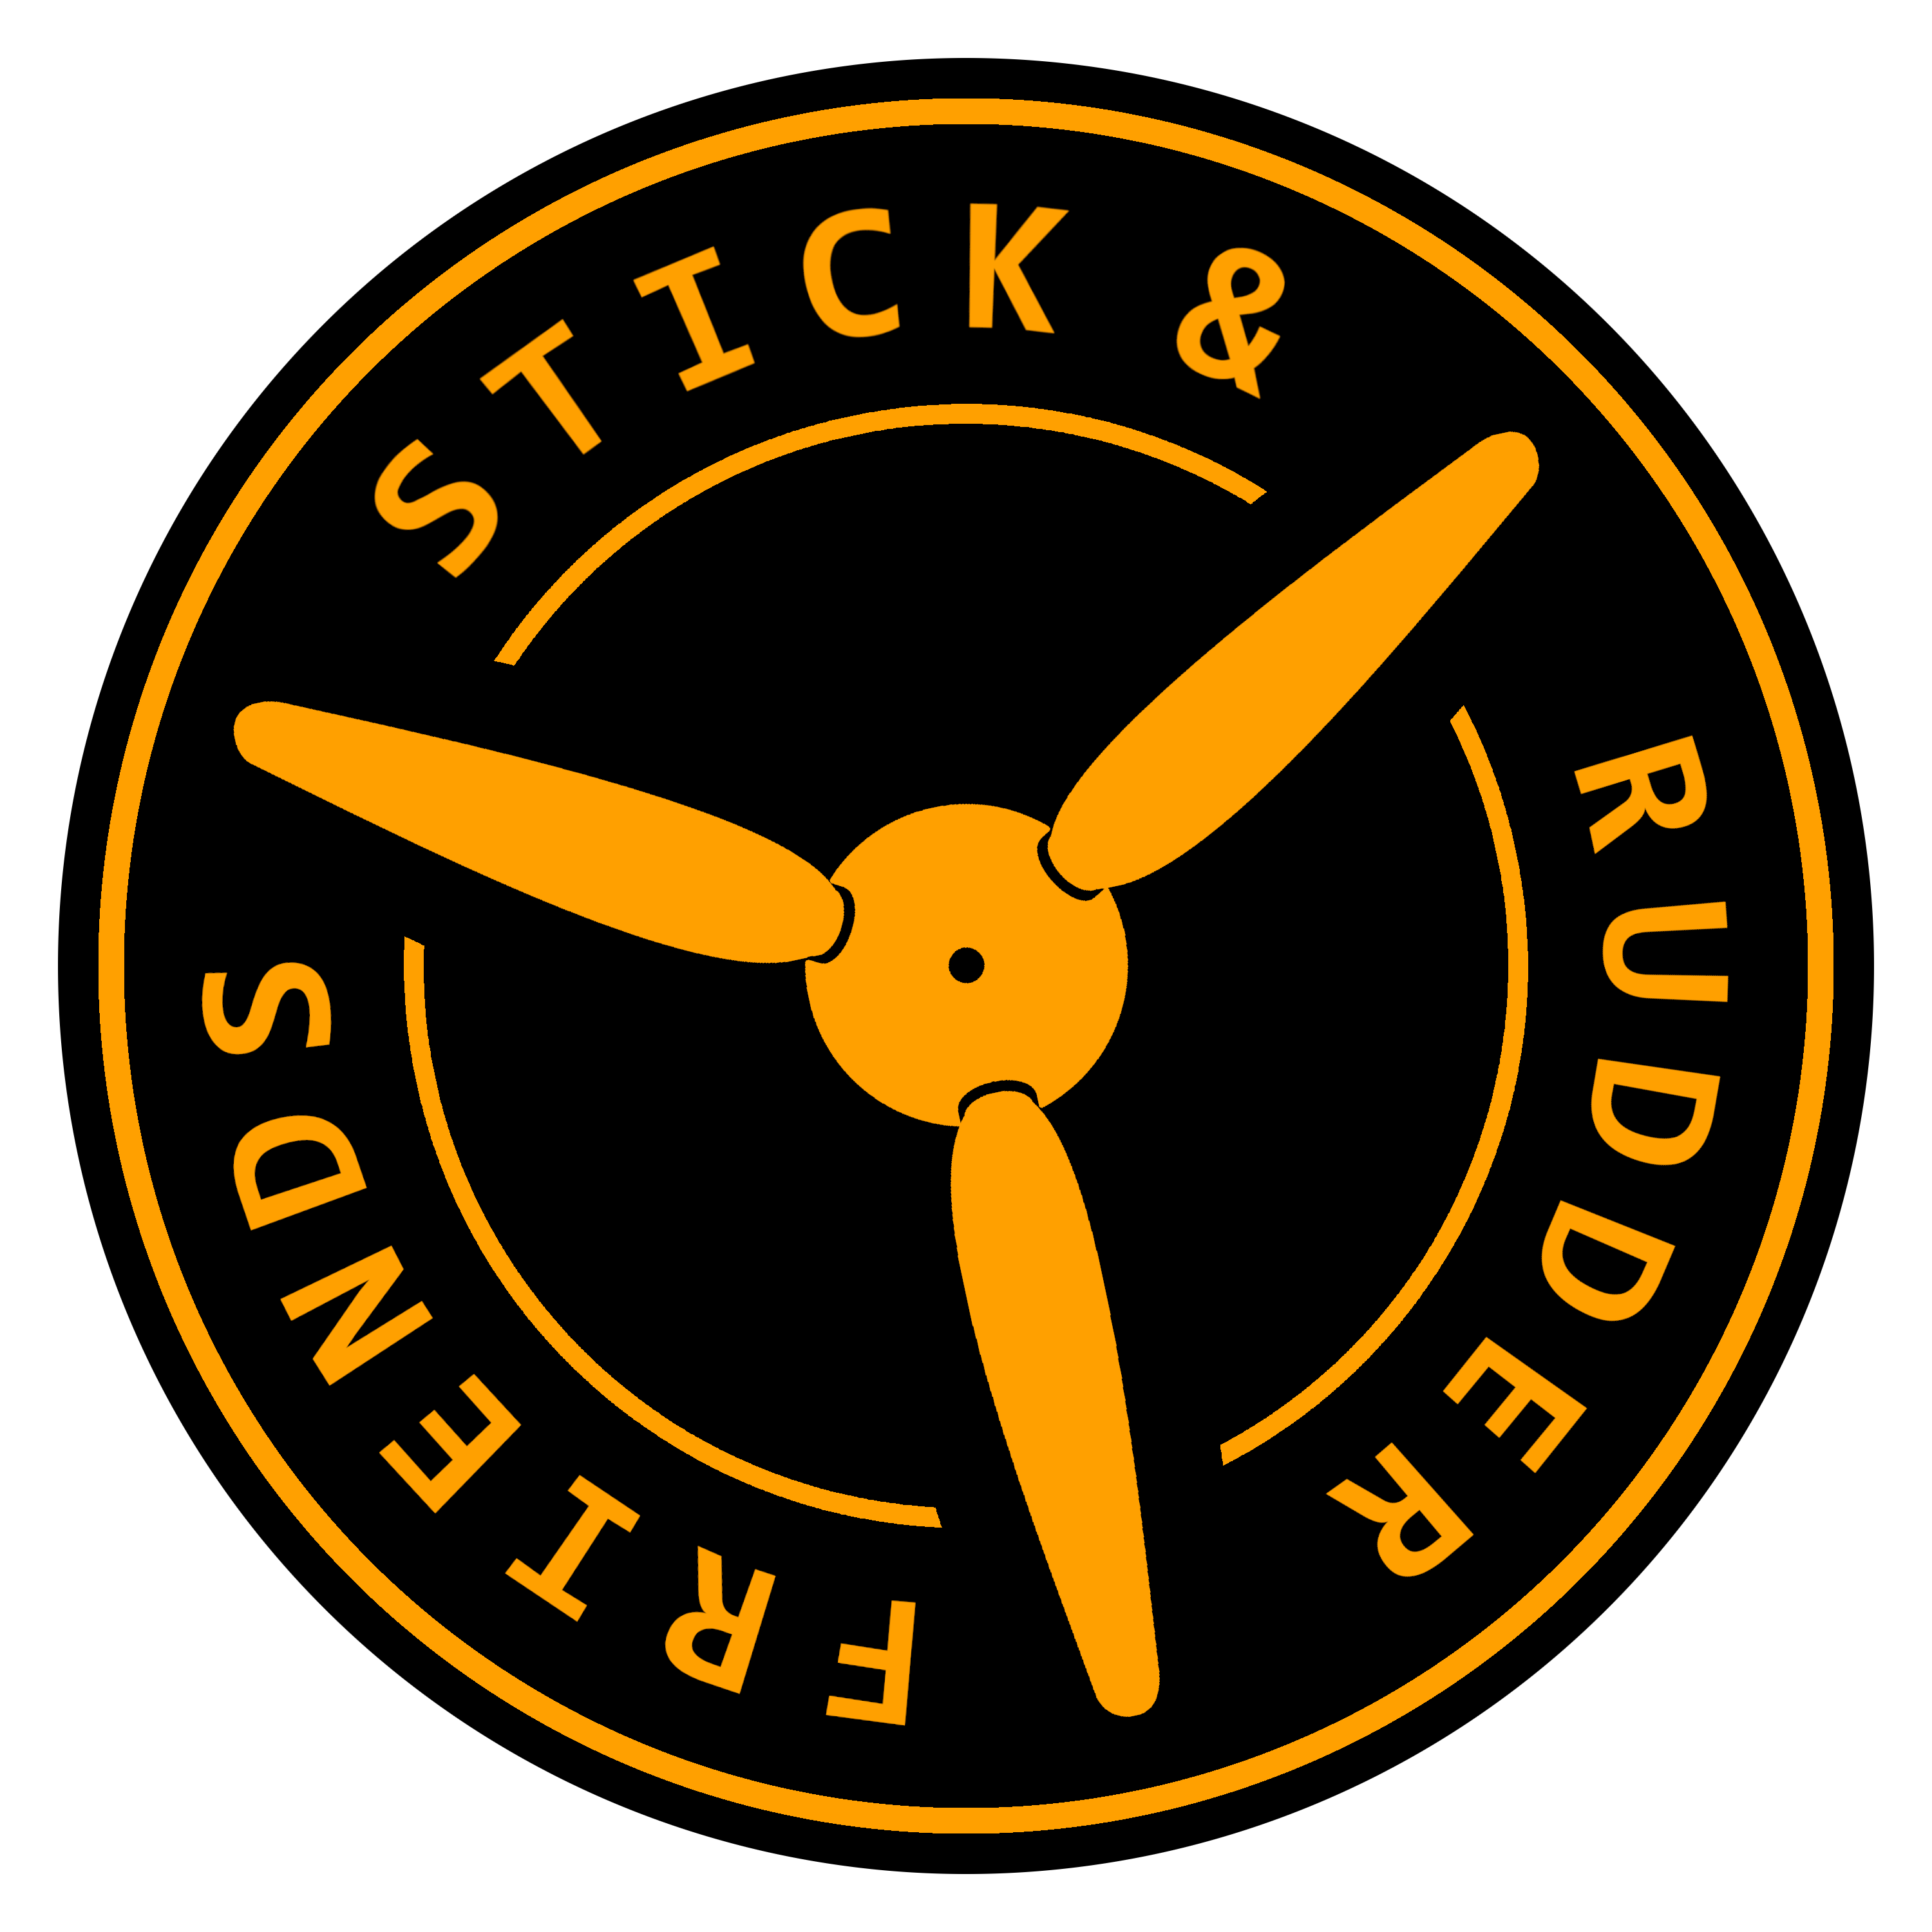 SRF-Logo